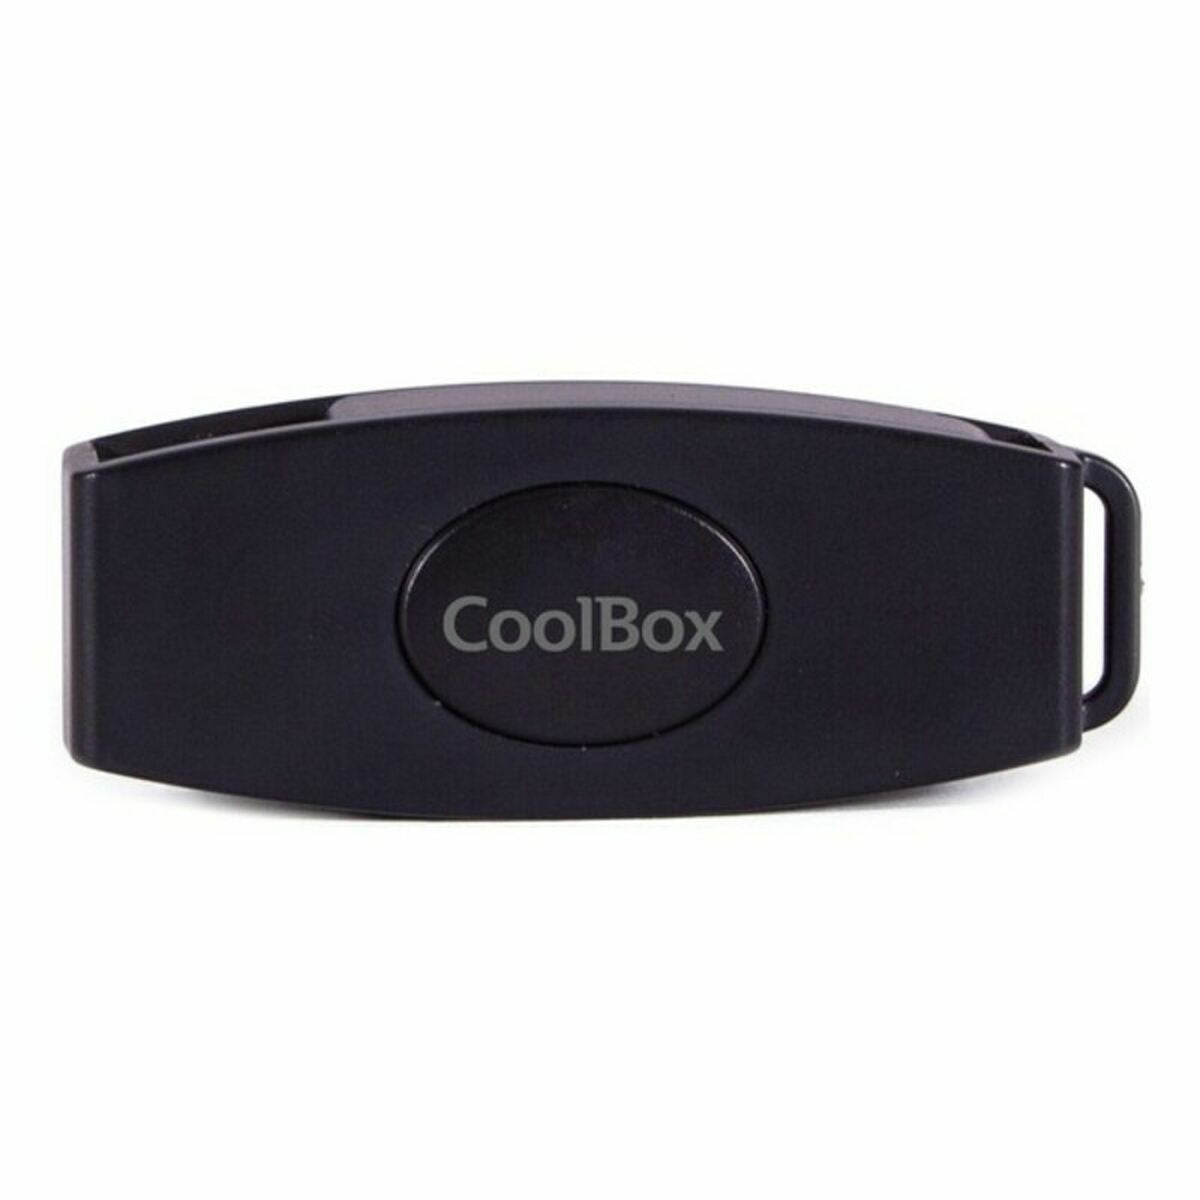 Card Reader CoolBox IN-SCE-COO-CRU-SC02